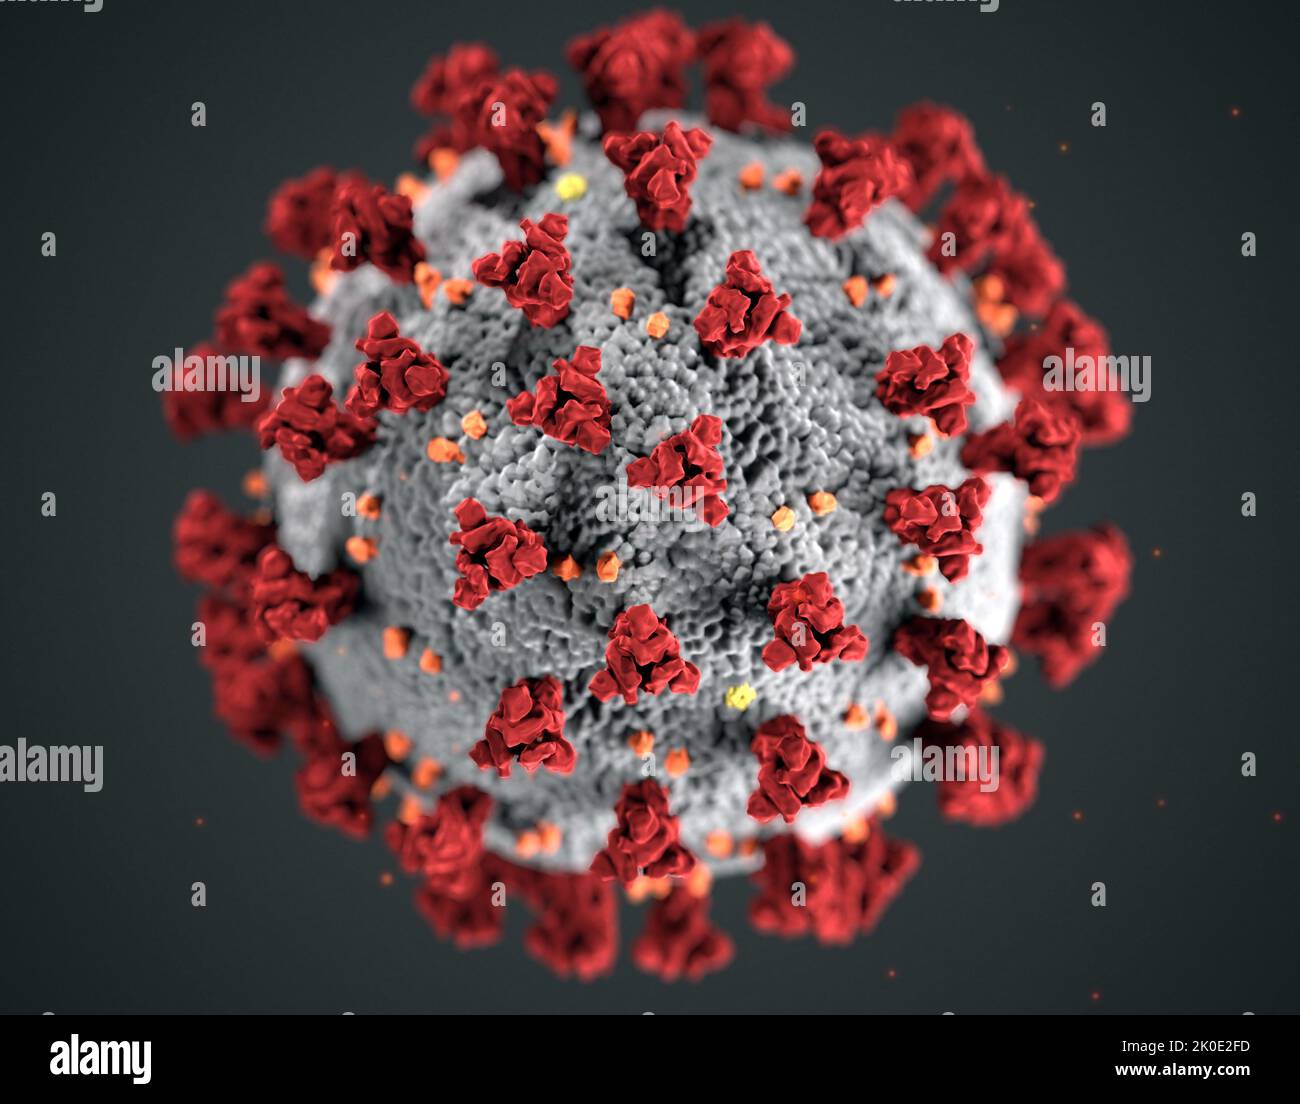 Illustrazione, creata presso i Centri per il controllo e la prevenzione delle malattie (CDC), della morfologia ultrostrutturale esibita dai coronavirus. Un nuovo coronavirus, chiamato sindrome respiratoria acuta grave coronavirus 2 (SARS-COV-2), è stato identificato come la causa di un focolaio di malattia respiratoria rilevato per la prima volta a Wuhan, Cina nel 2019. La malattia causata da questo virus è stata chiamata coronavirus malattia 2019 (COVID-19). Foto Stock